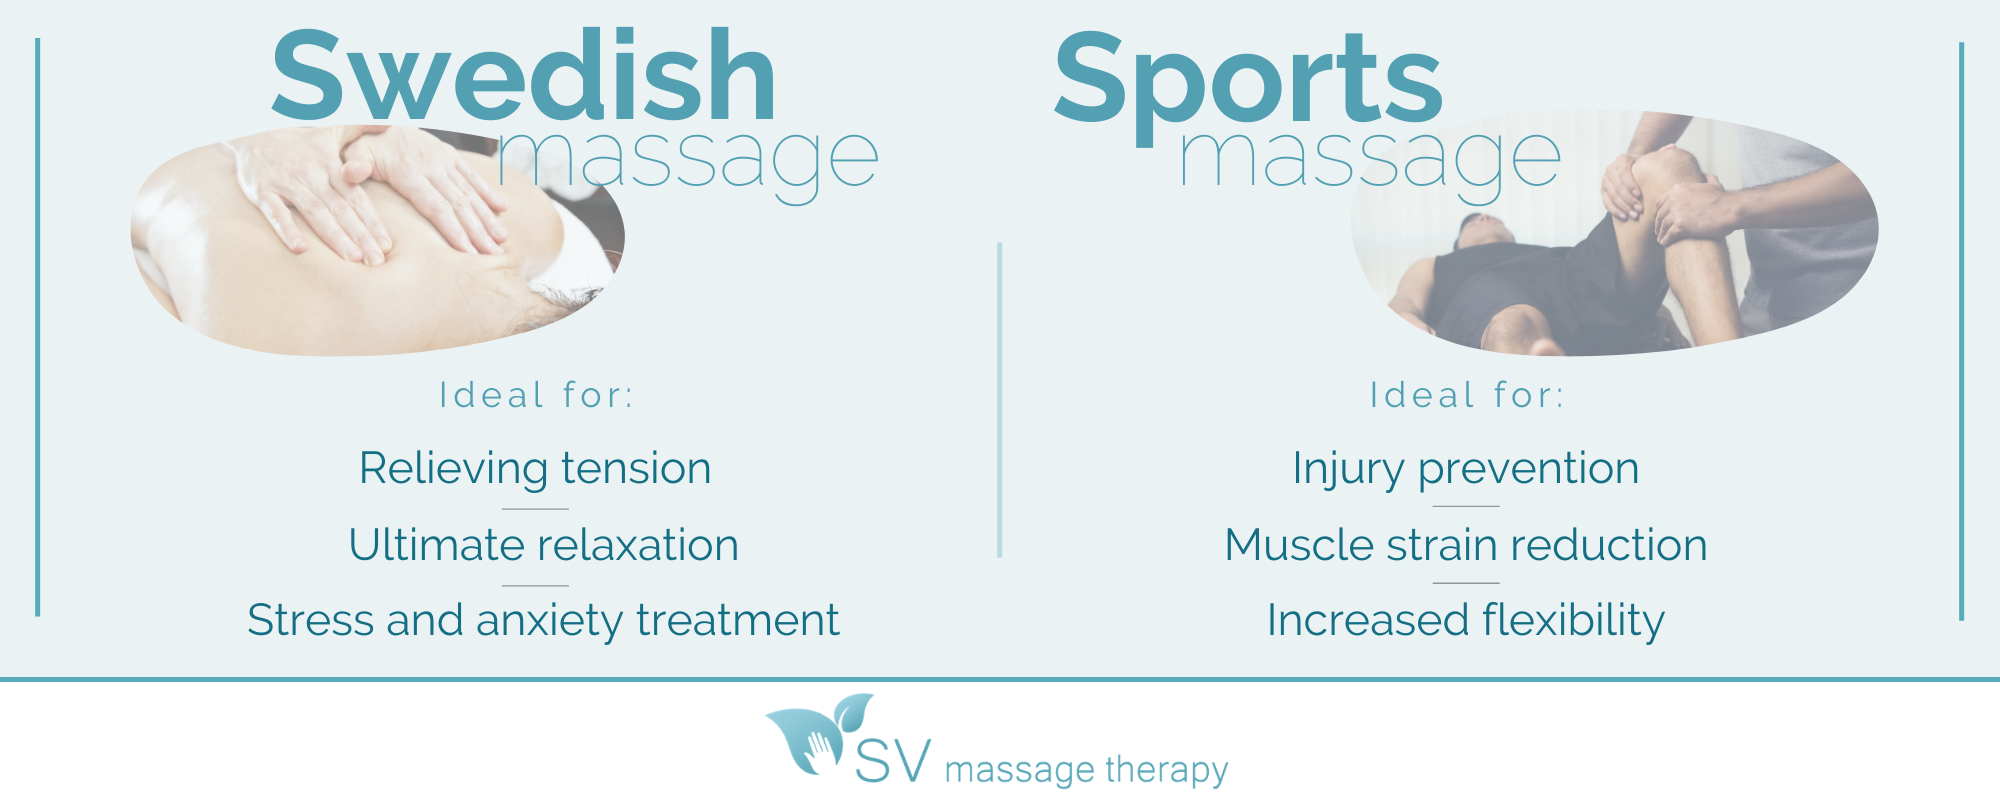 swedish massage vs. sports massage